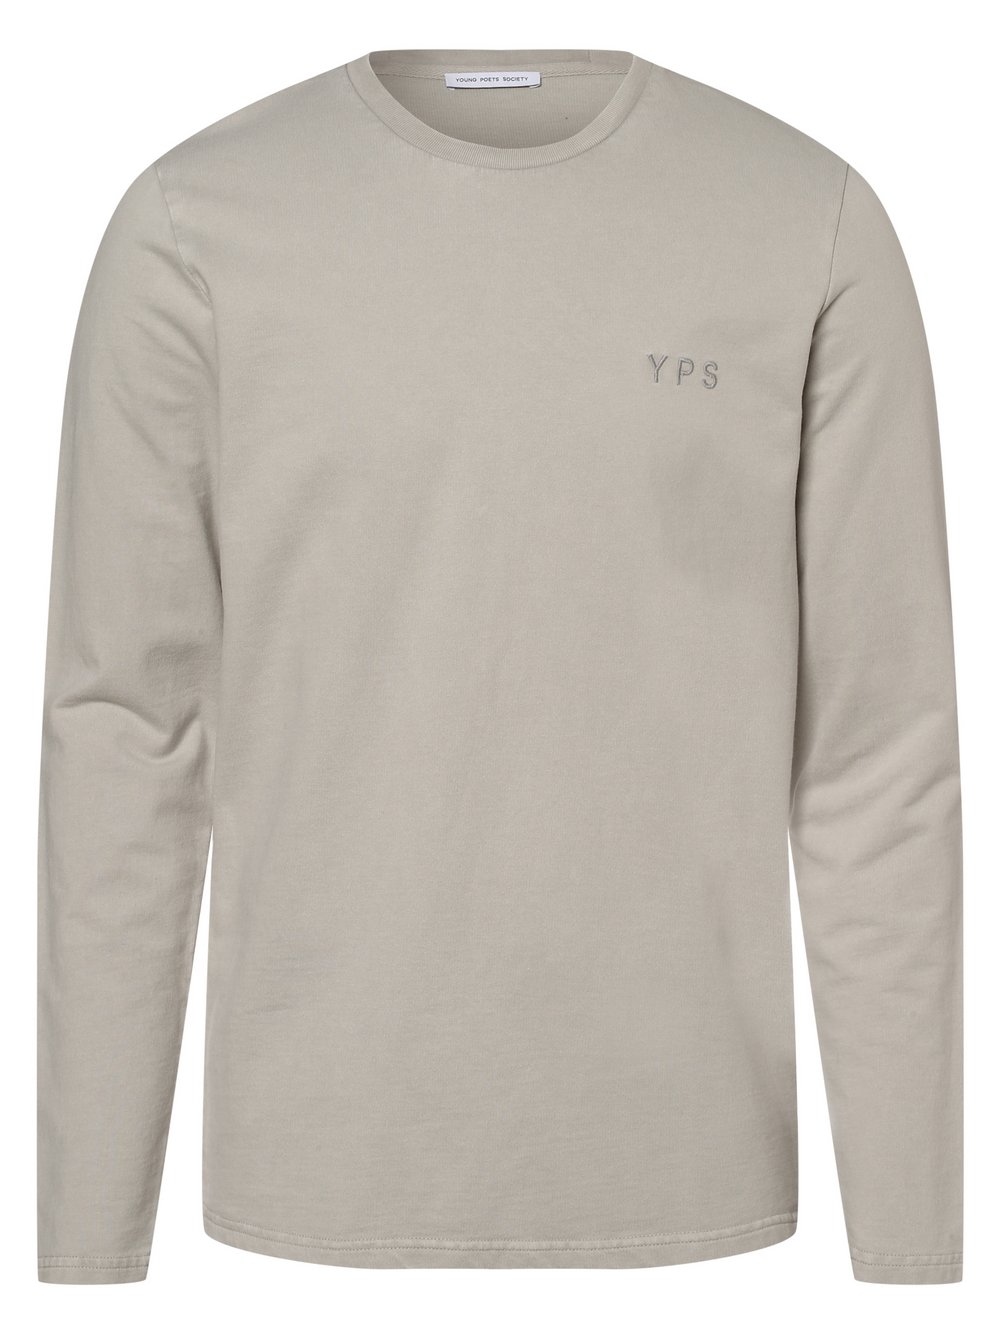 YPS - Męska bluza nierozpinana – Lio, beżowy|szary